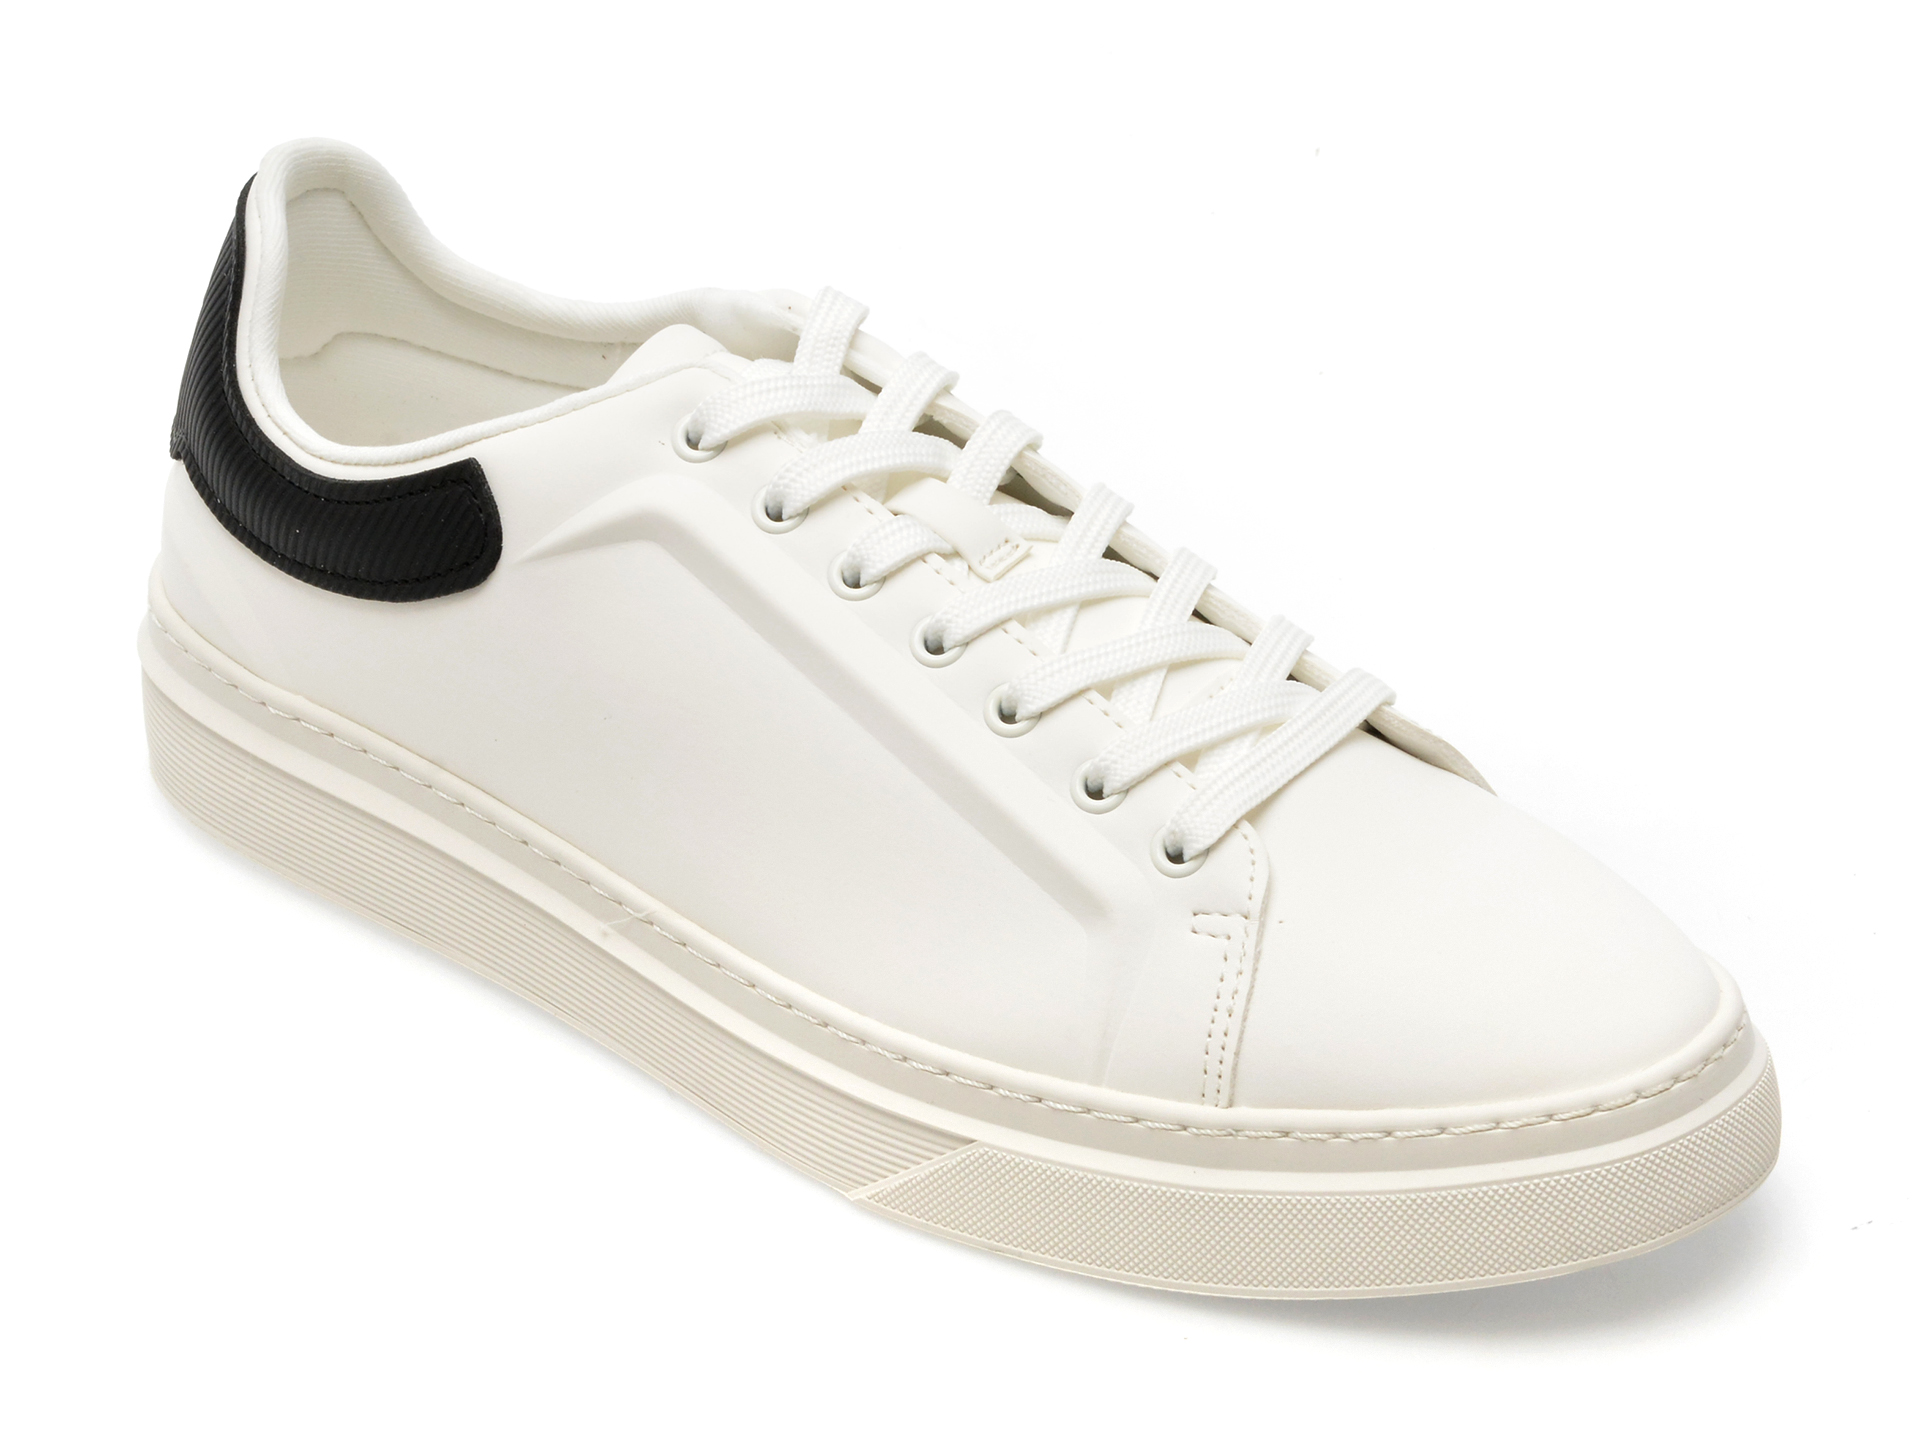 Pantofi ALDO albi, STEPSPEC100, din piele ecologica